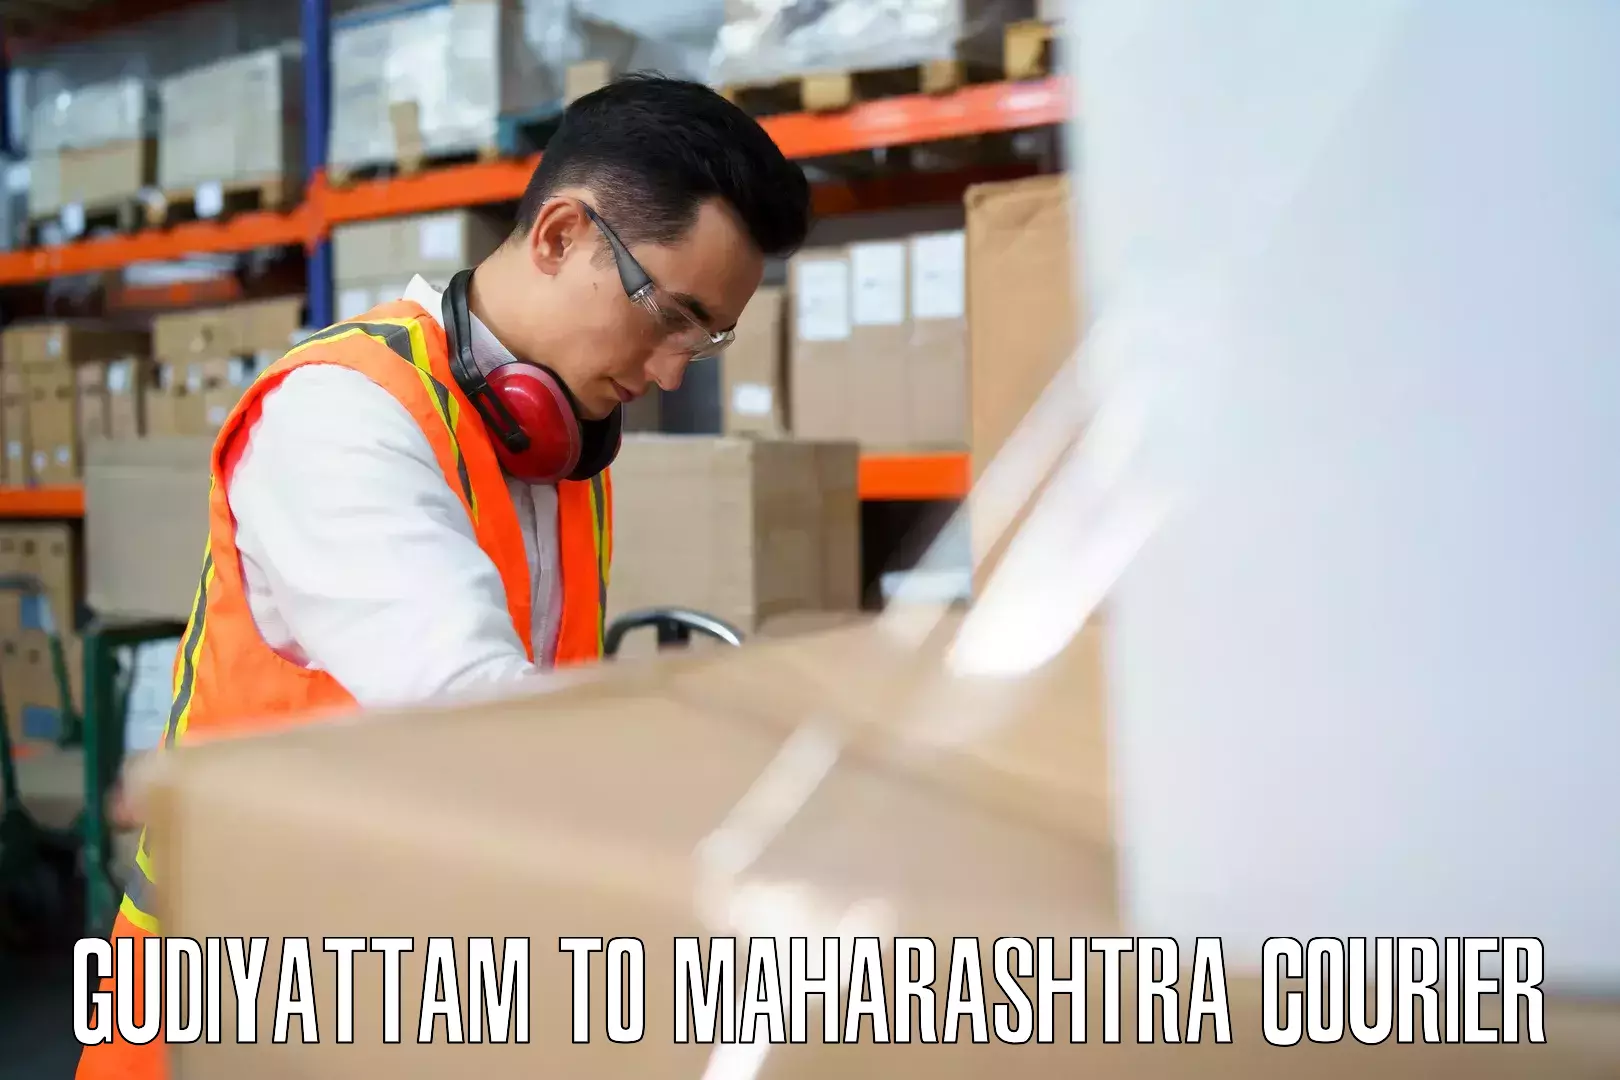 Luggage shipment processing Gudiyattam to Maharashtra